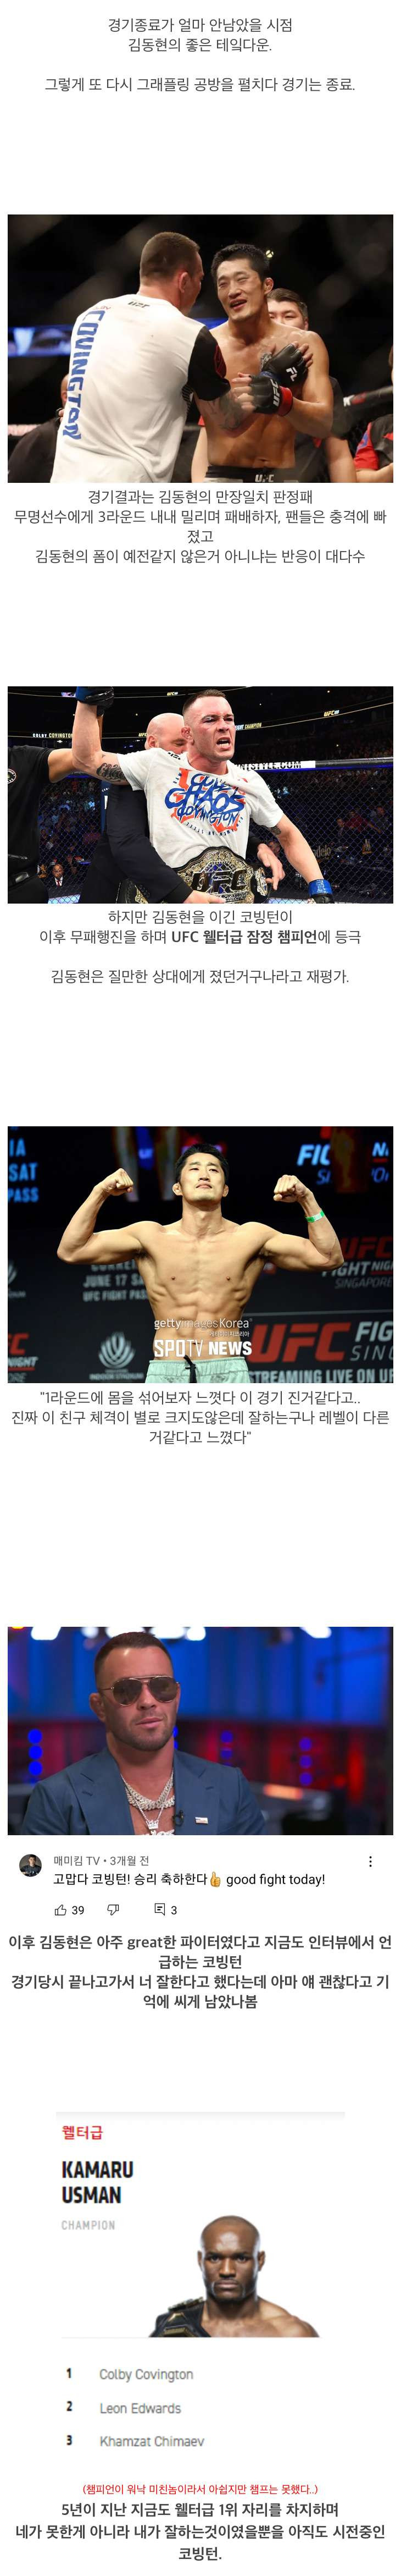 UFC 김동현의 마지막이였던 경기 이미지 #8